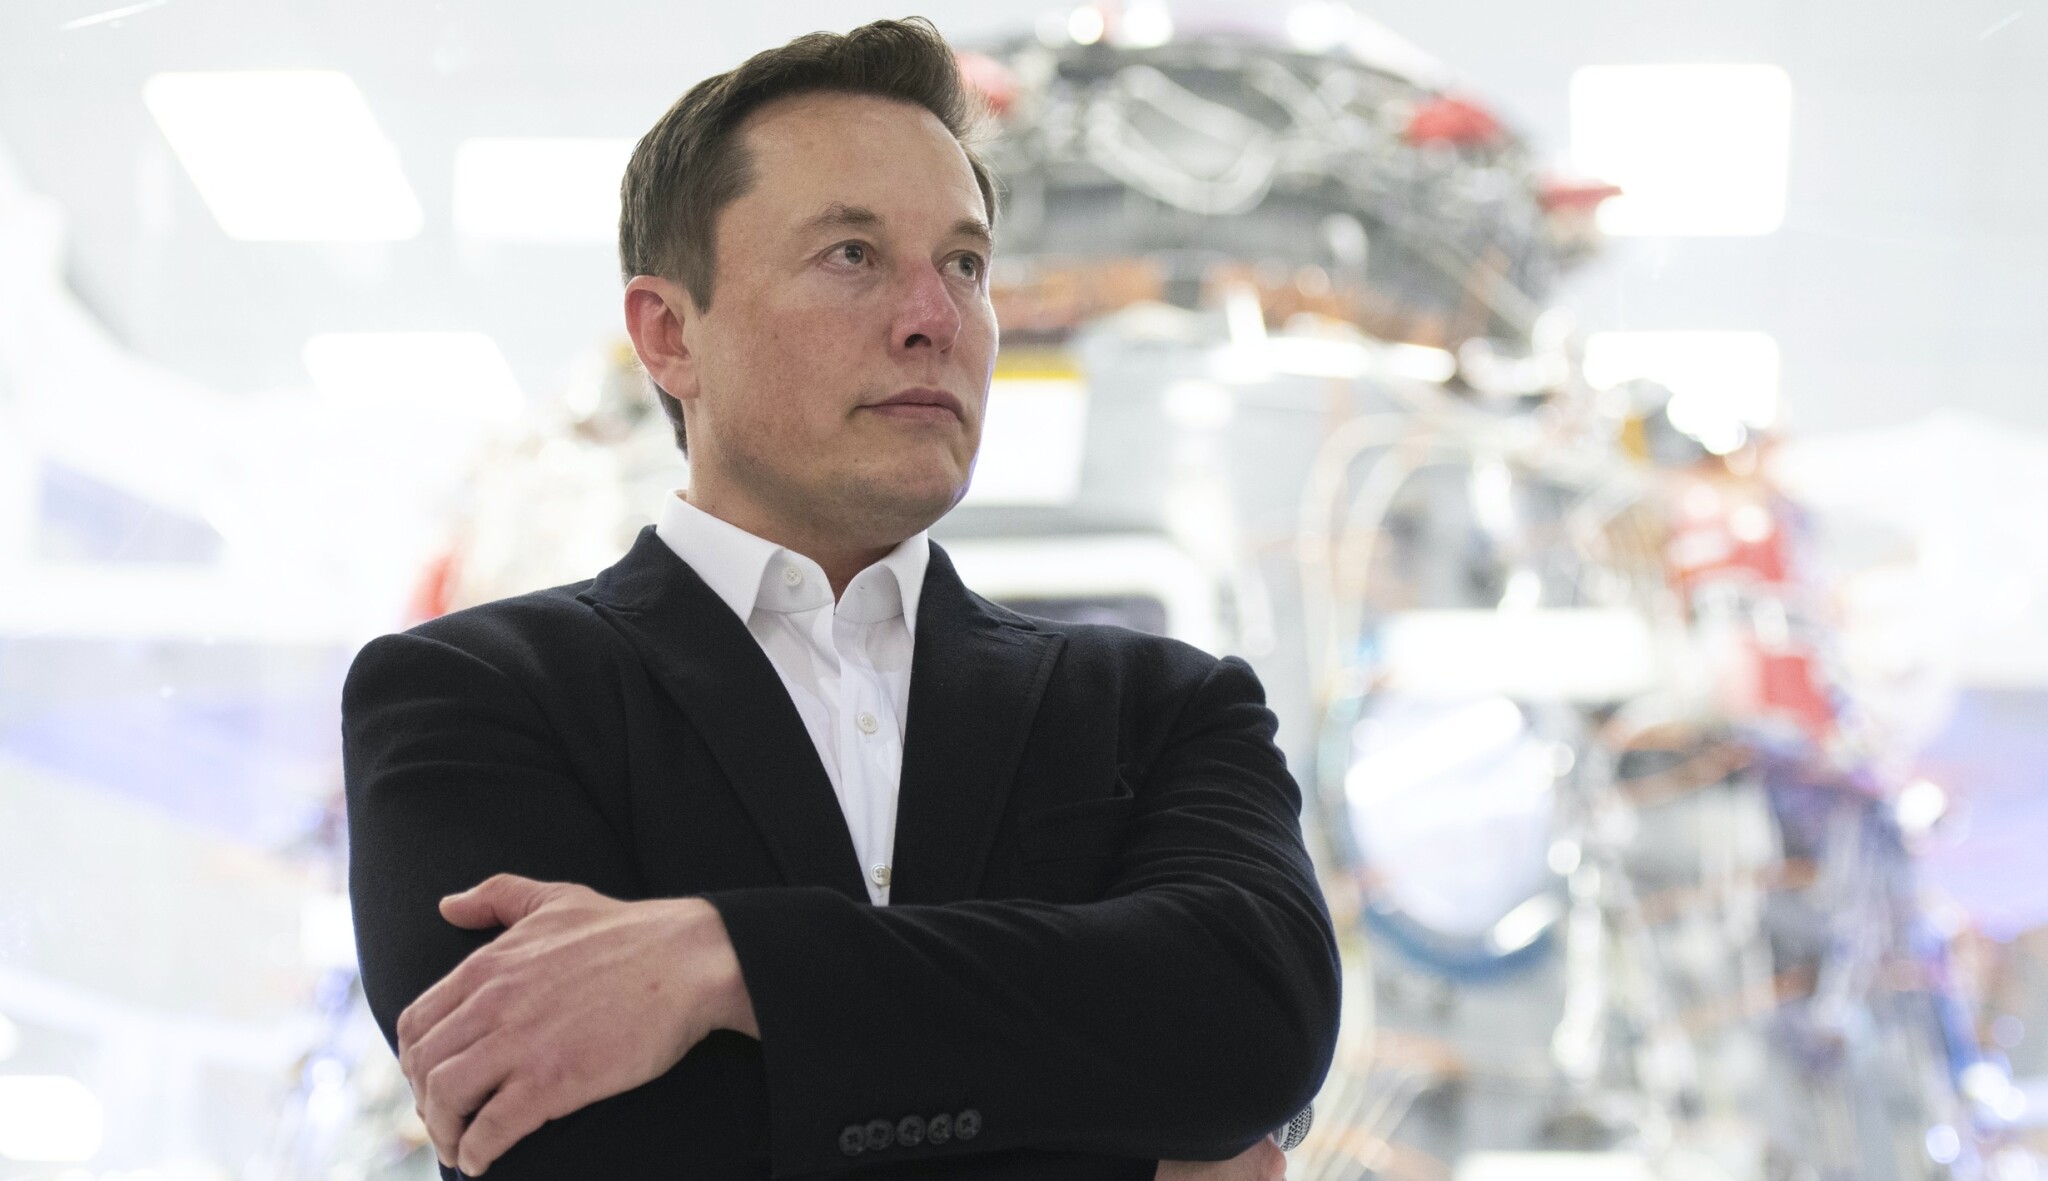 Bude Elon Musk prvním dolarovým bilionářem? Roli bude hrát i klimatická krize